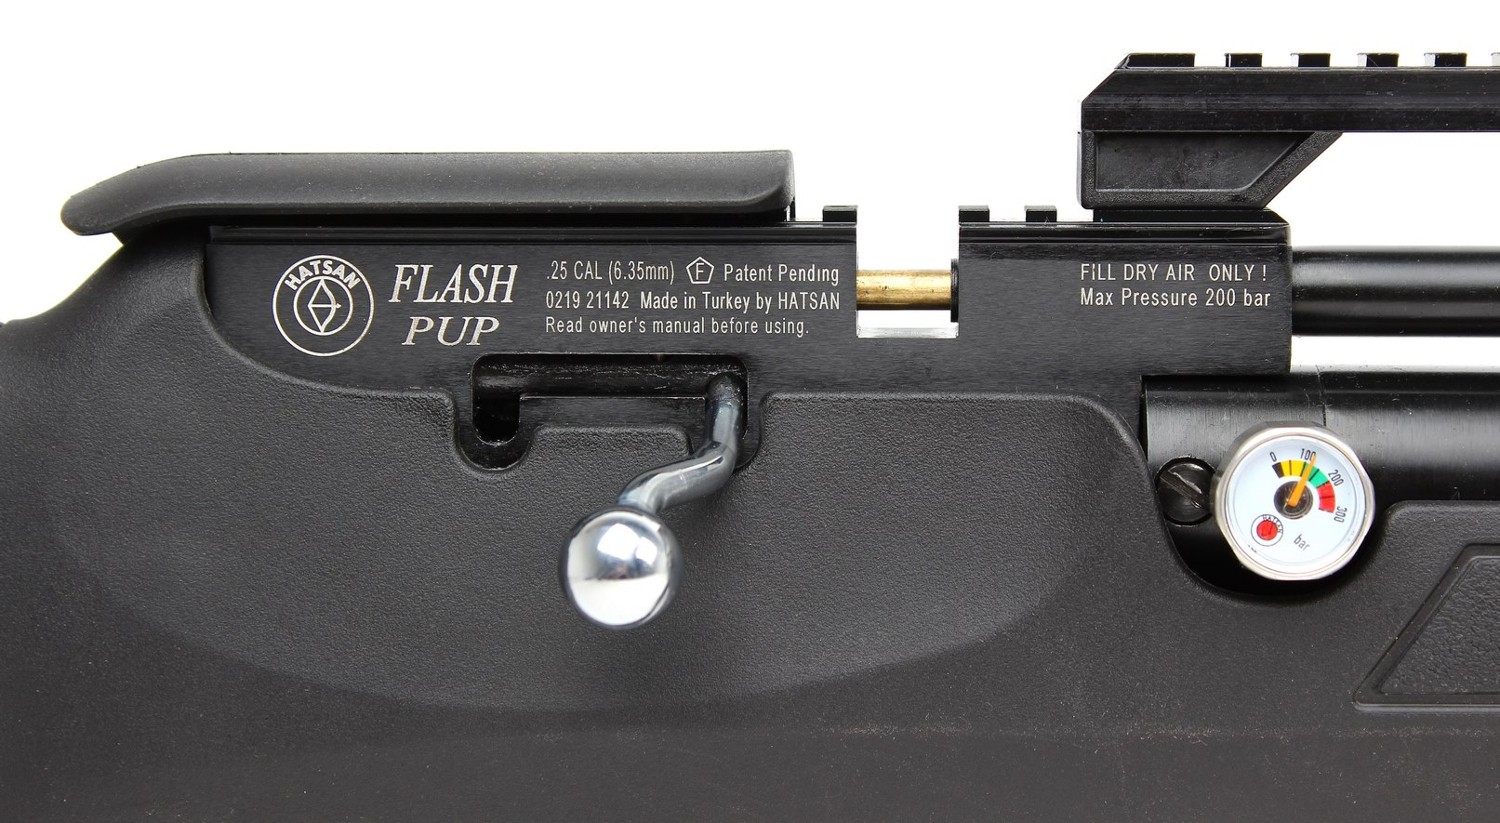 Пневматическая винтовка Hatsan Flashpup, калибр 6,35 мм